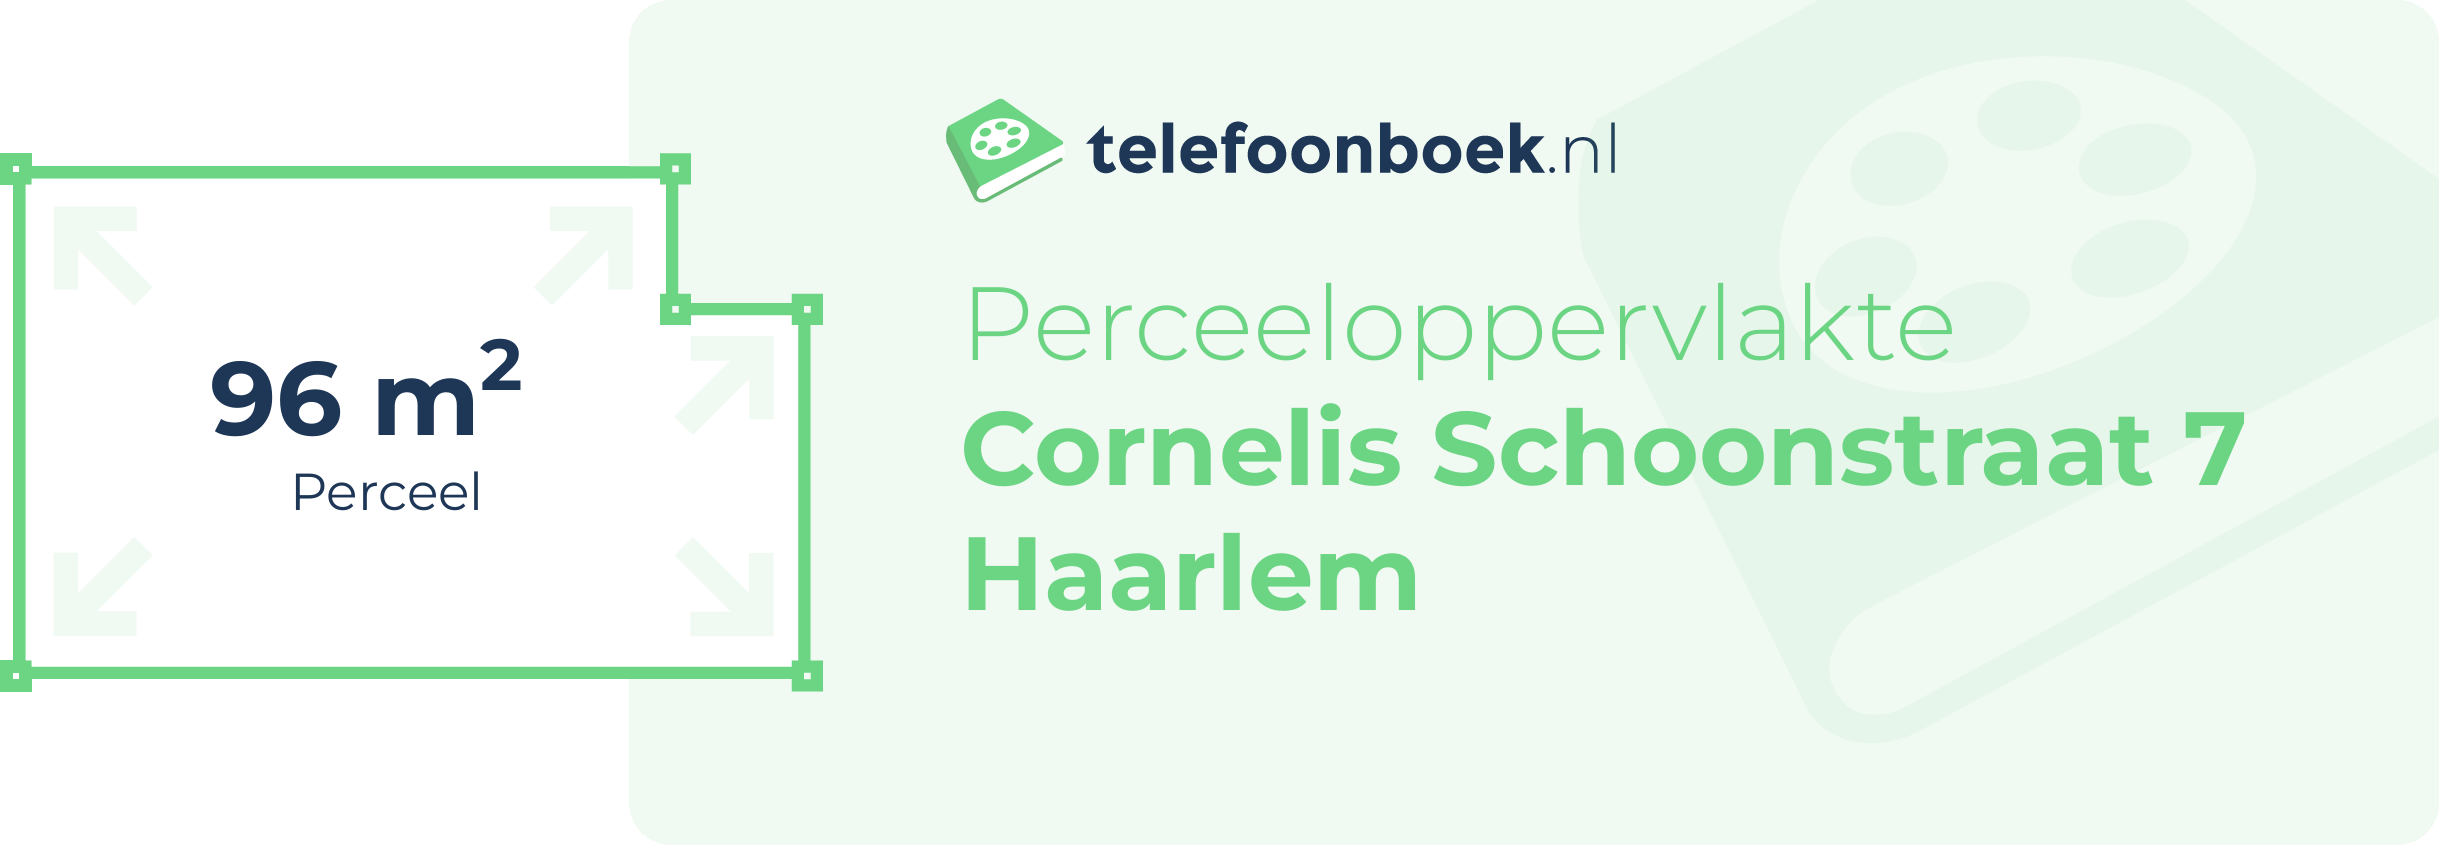 Perceeloppervlakte Cornelis Schoonstraat 7 Haarlem